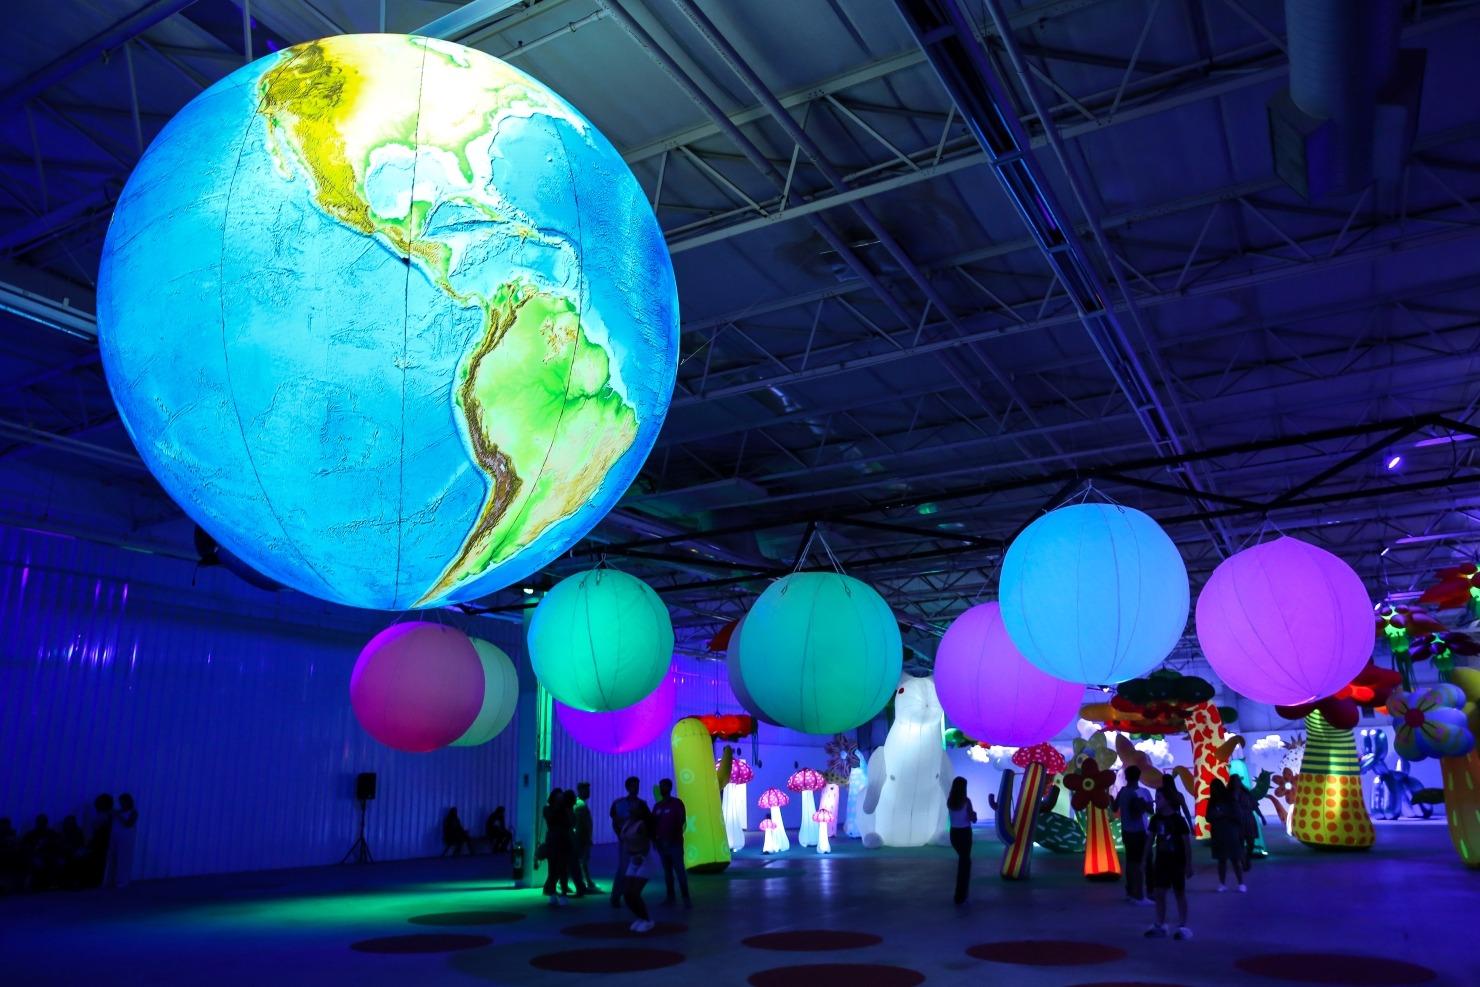 Exposição interativa “Blow Up: um sopro de diversão” atrai mais de 20 mil visitantes no Rio de Janeiro